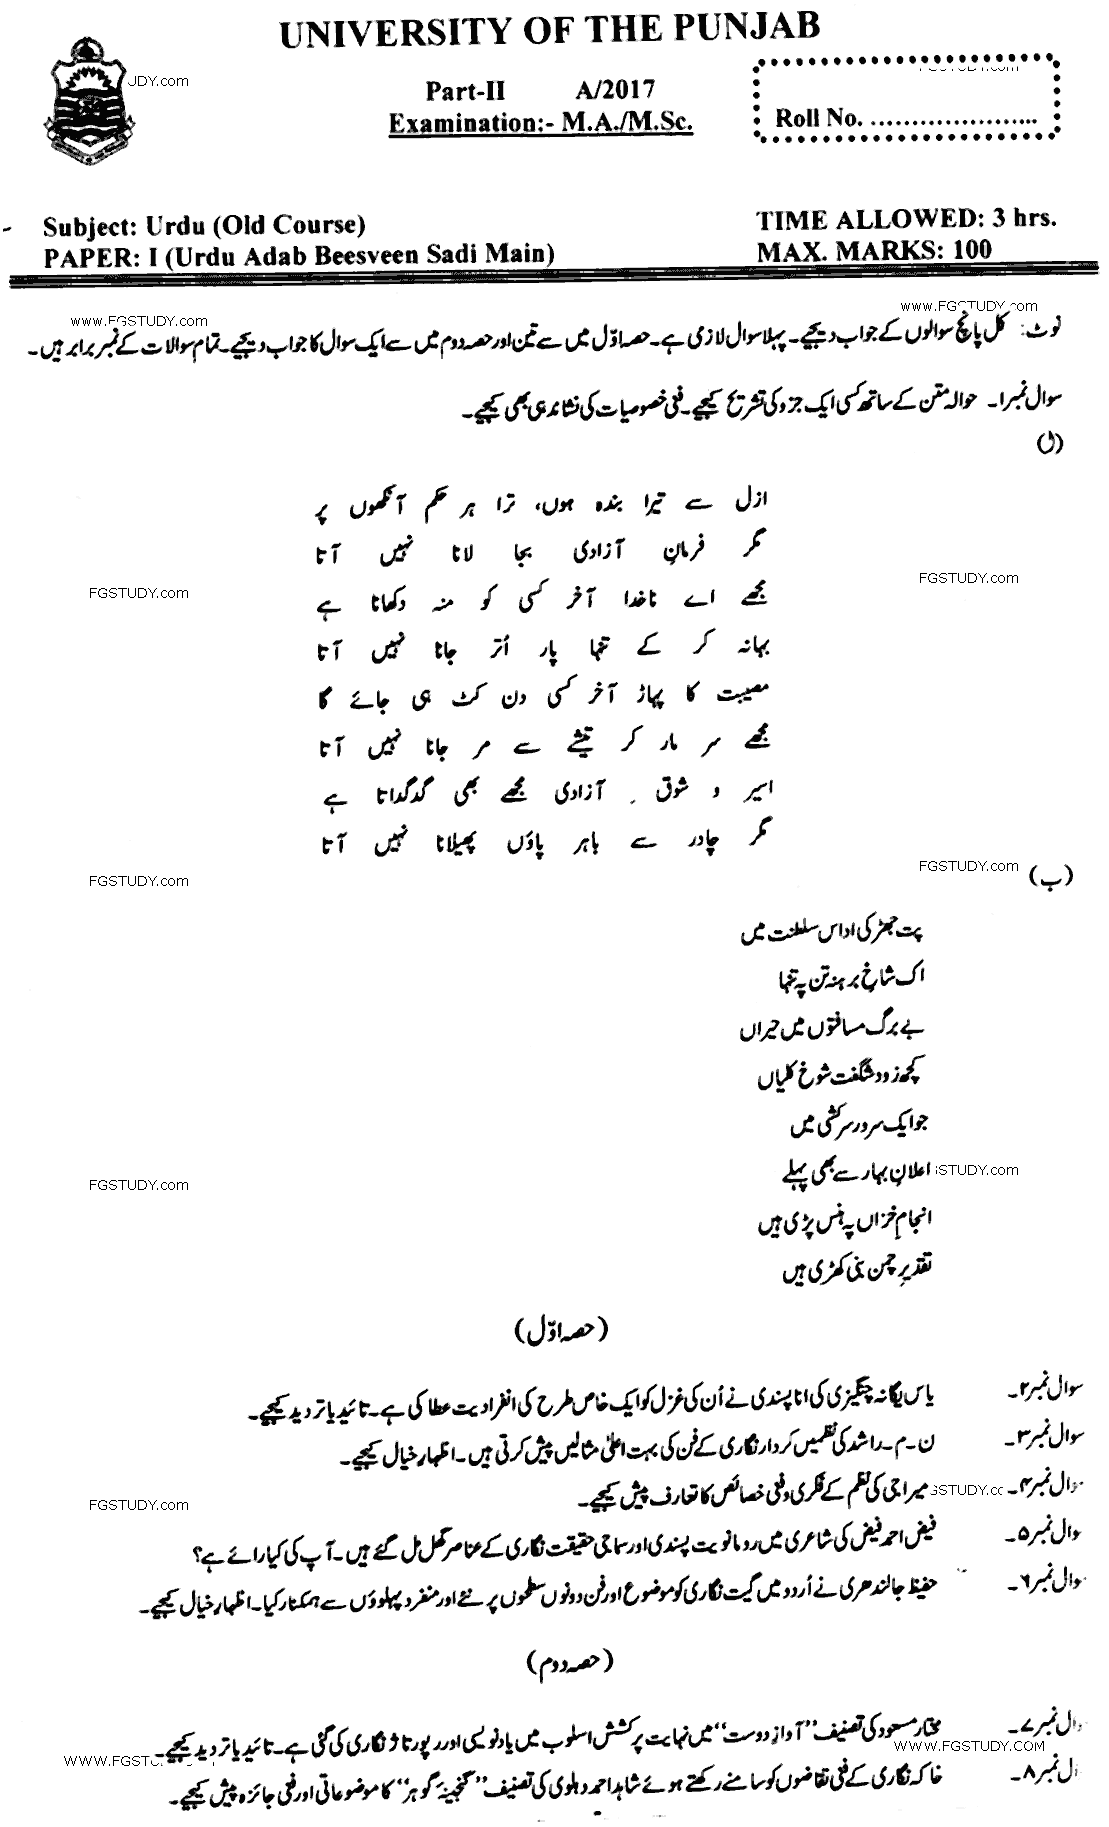 MA Part 2 Urdu Urdu Adab Beesveen Sadi Main Past Paper 2017 Punjab University